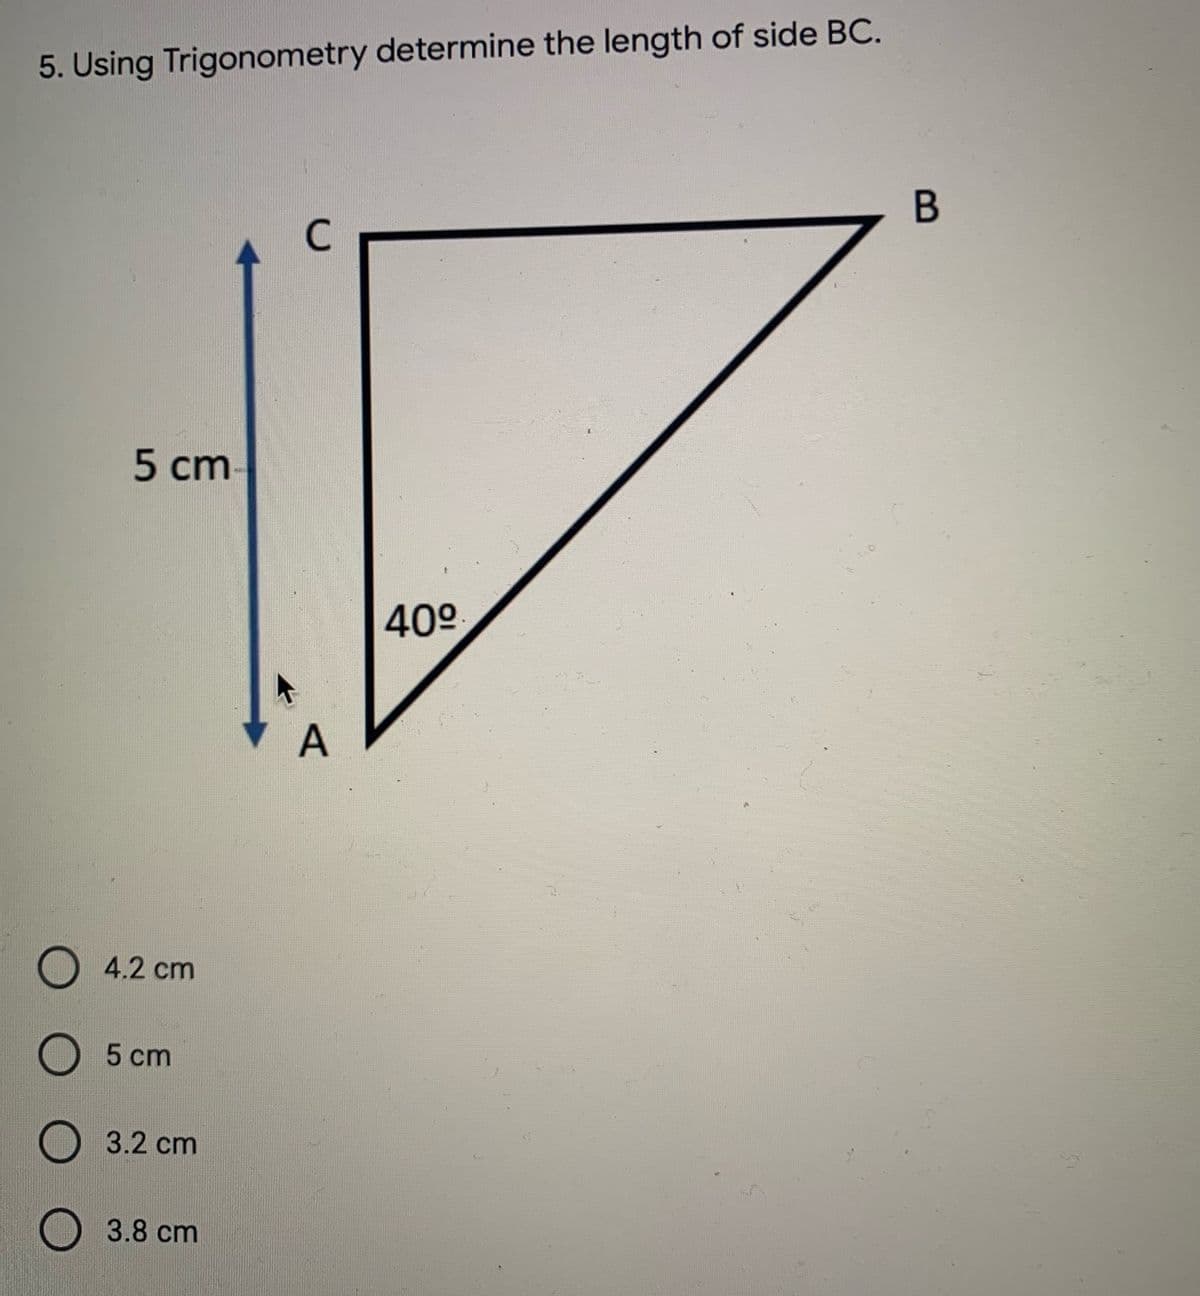 5. Using Trigonometry determine the length of side BC.
C
5 cm
40°
A
4.2 cm
5 cm
3.2 cm
3.8 cm
